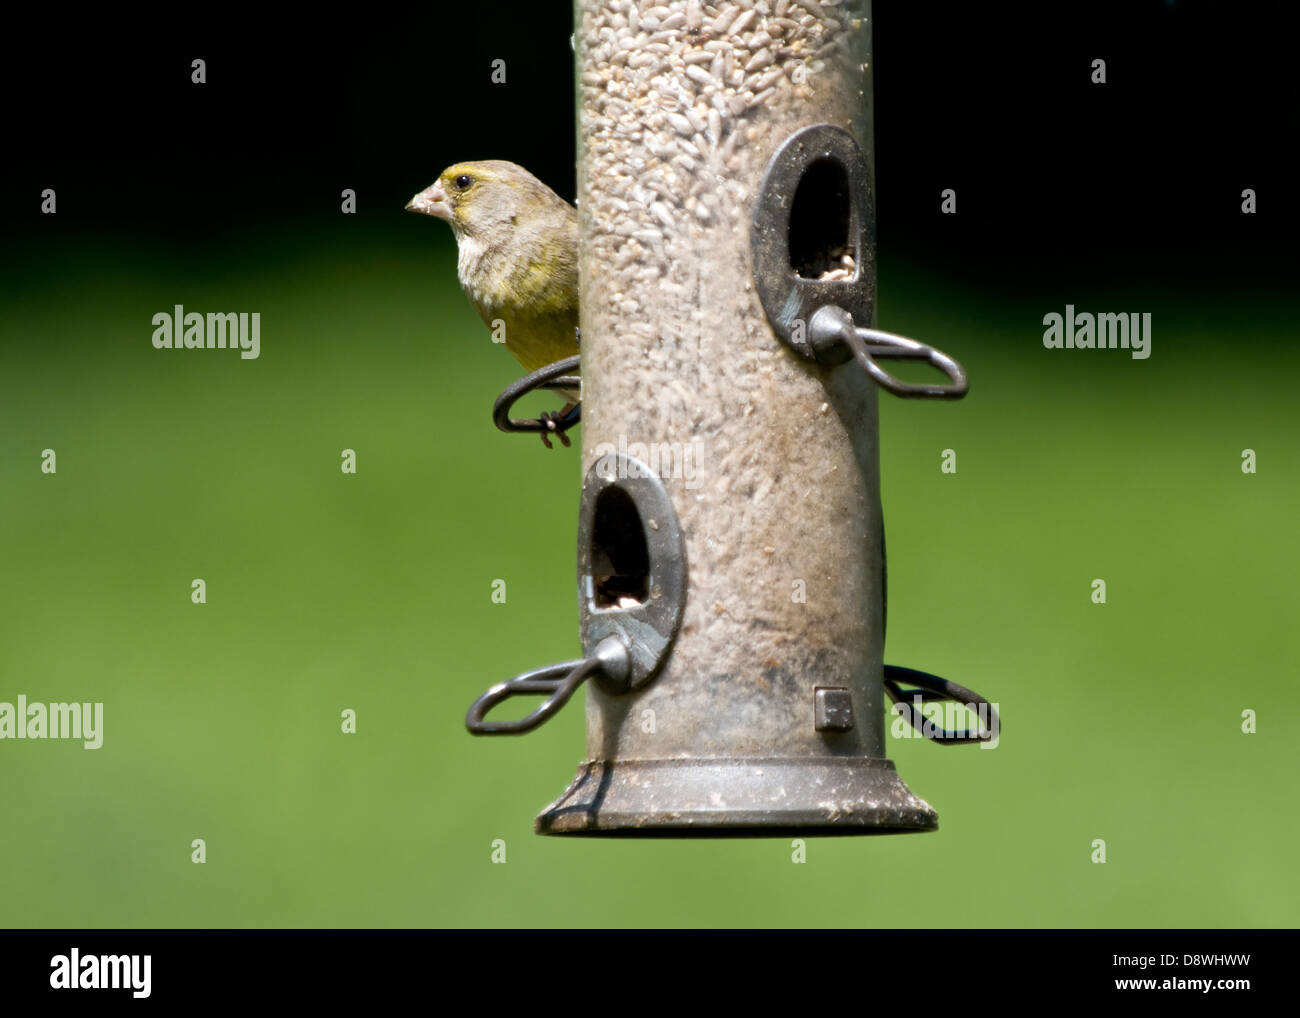 Grünfink Fütterung auf Sonnenblumen Herzen am Futterhäuschen mit Fokus-Hintergrund Stockfoto